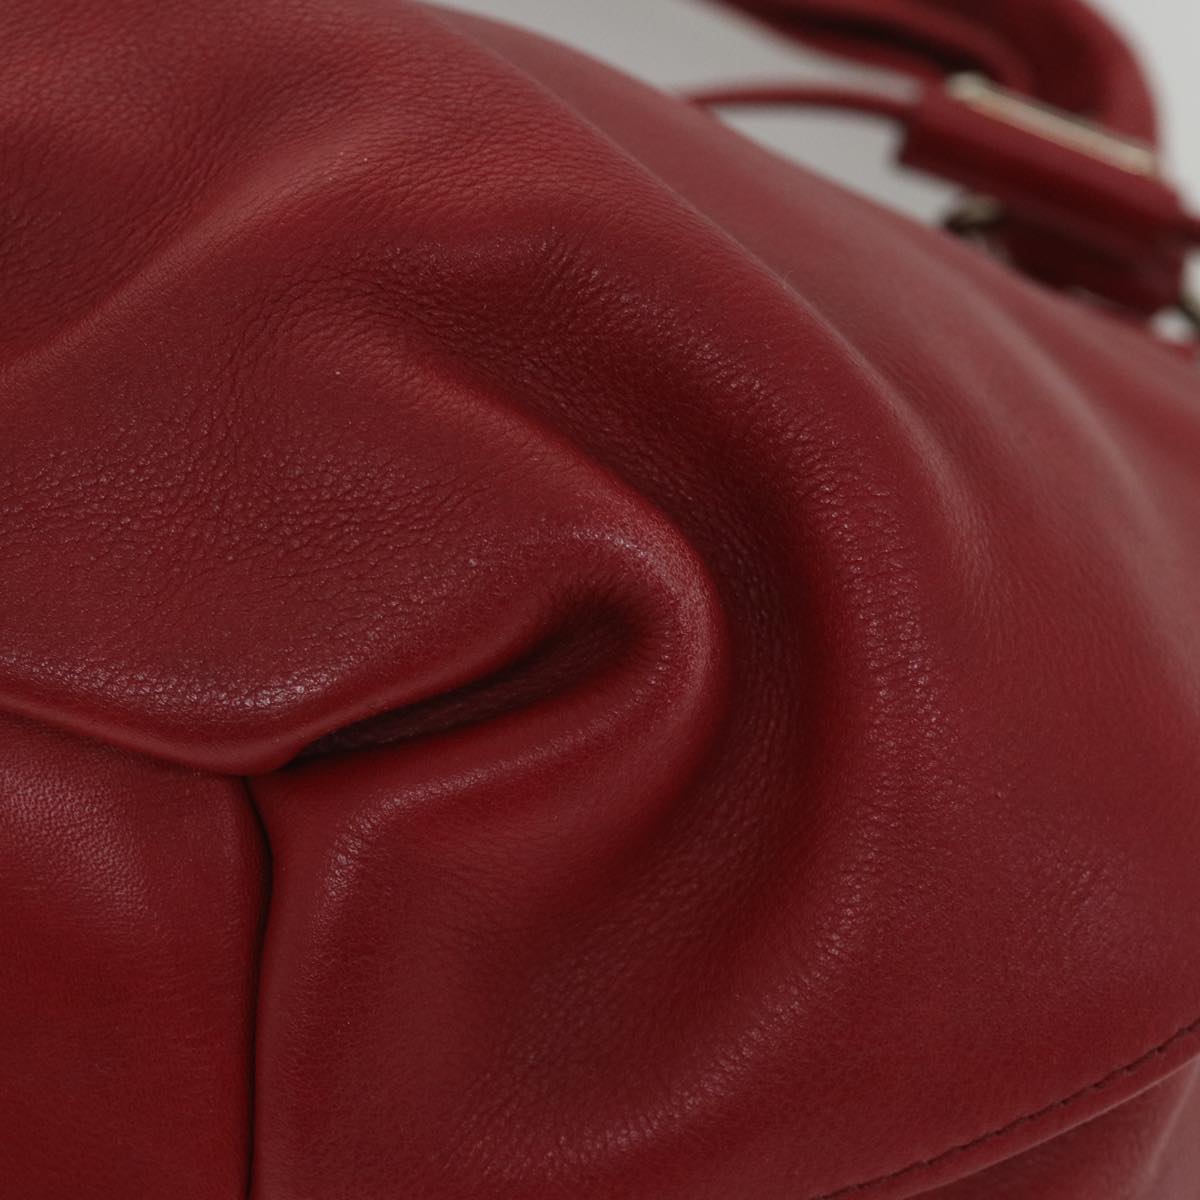 CELINE Shoulder Bag Leather Red Auth 58409